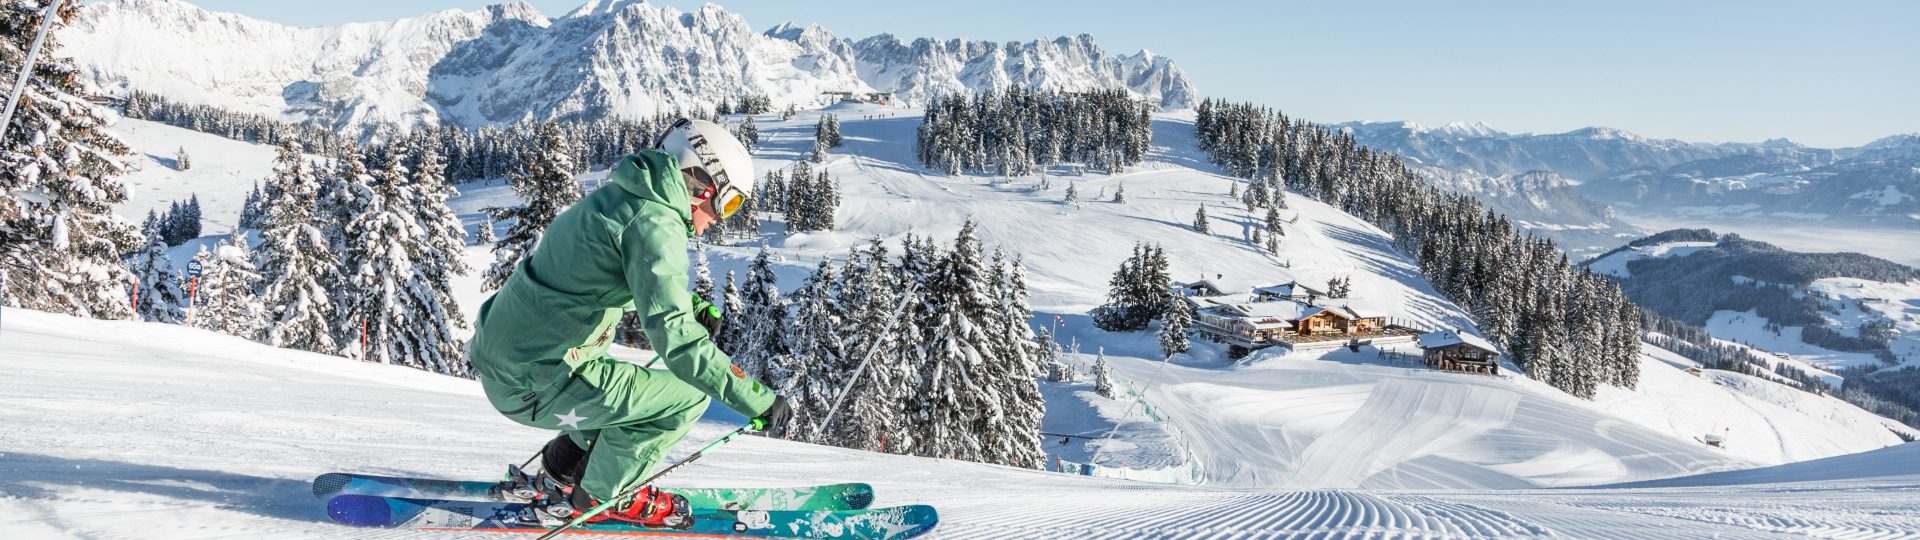 skifahrerin vor der hohen salve skiwelt wilder kaiser brixental